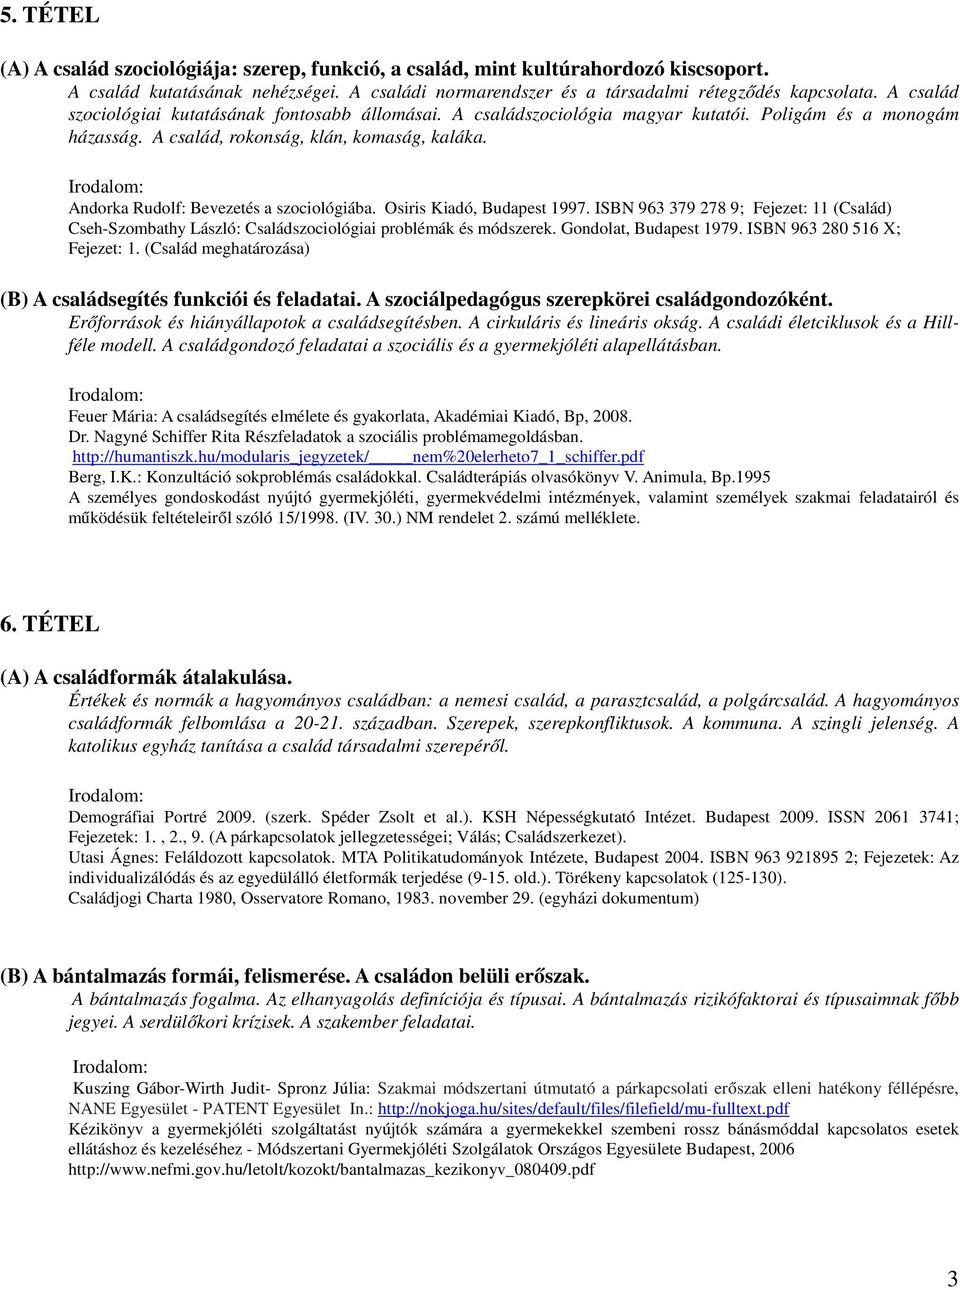 Andorka Rudolf: Bevezetés a szociológiába. Osiris Kiadó, Budapest 1997. ISBN 963 379 278 9; Fejezet: 11 (Család) Cseh-Szombathy László: Családszociológiai problémák és módszerek.